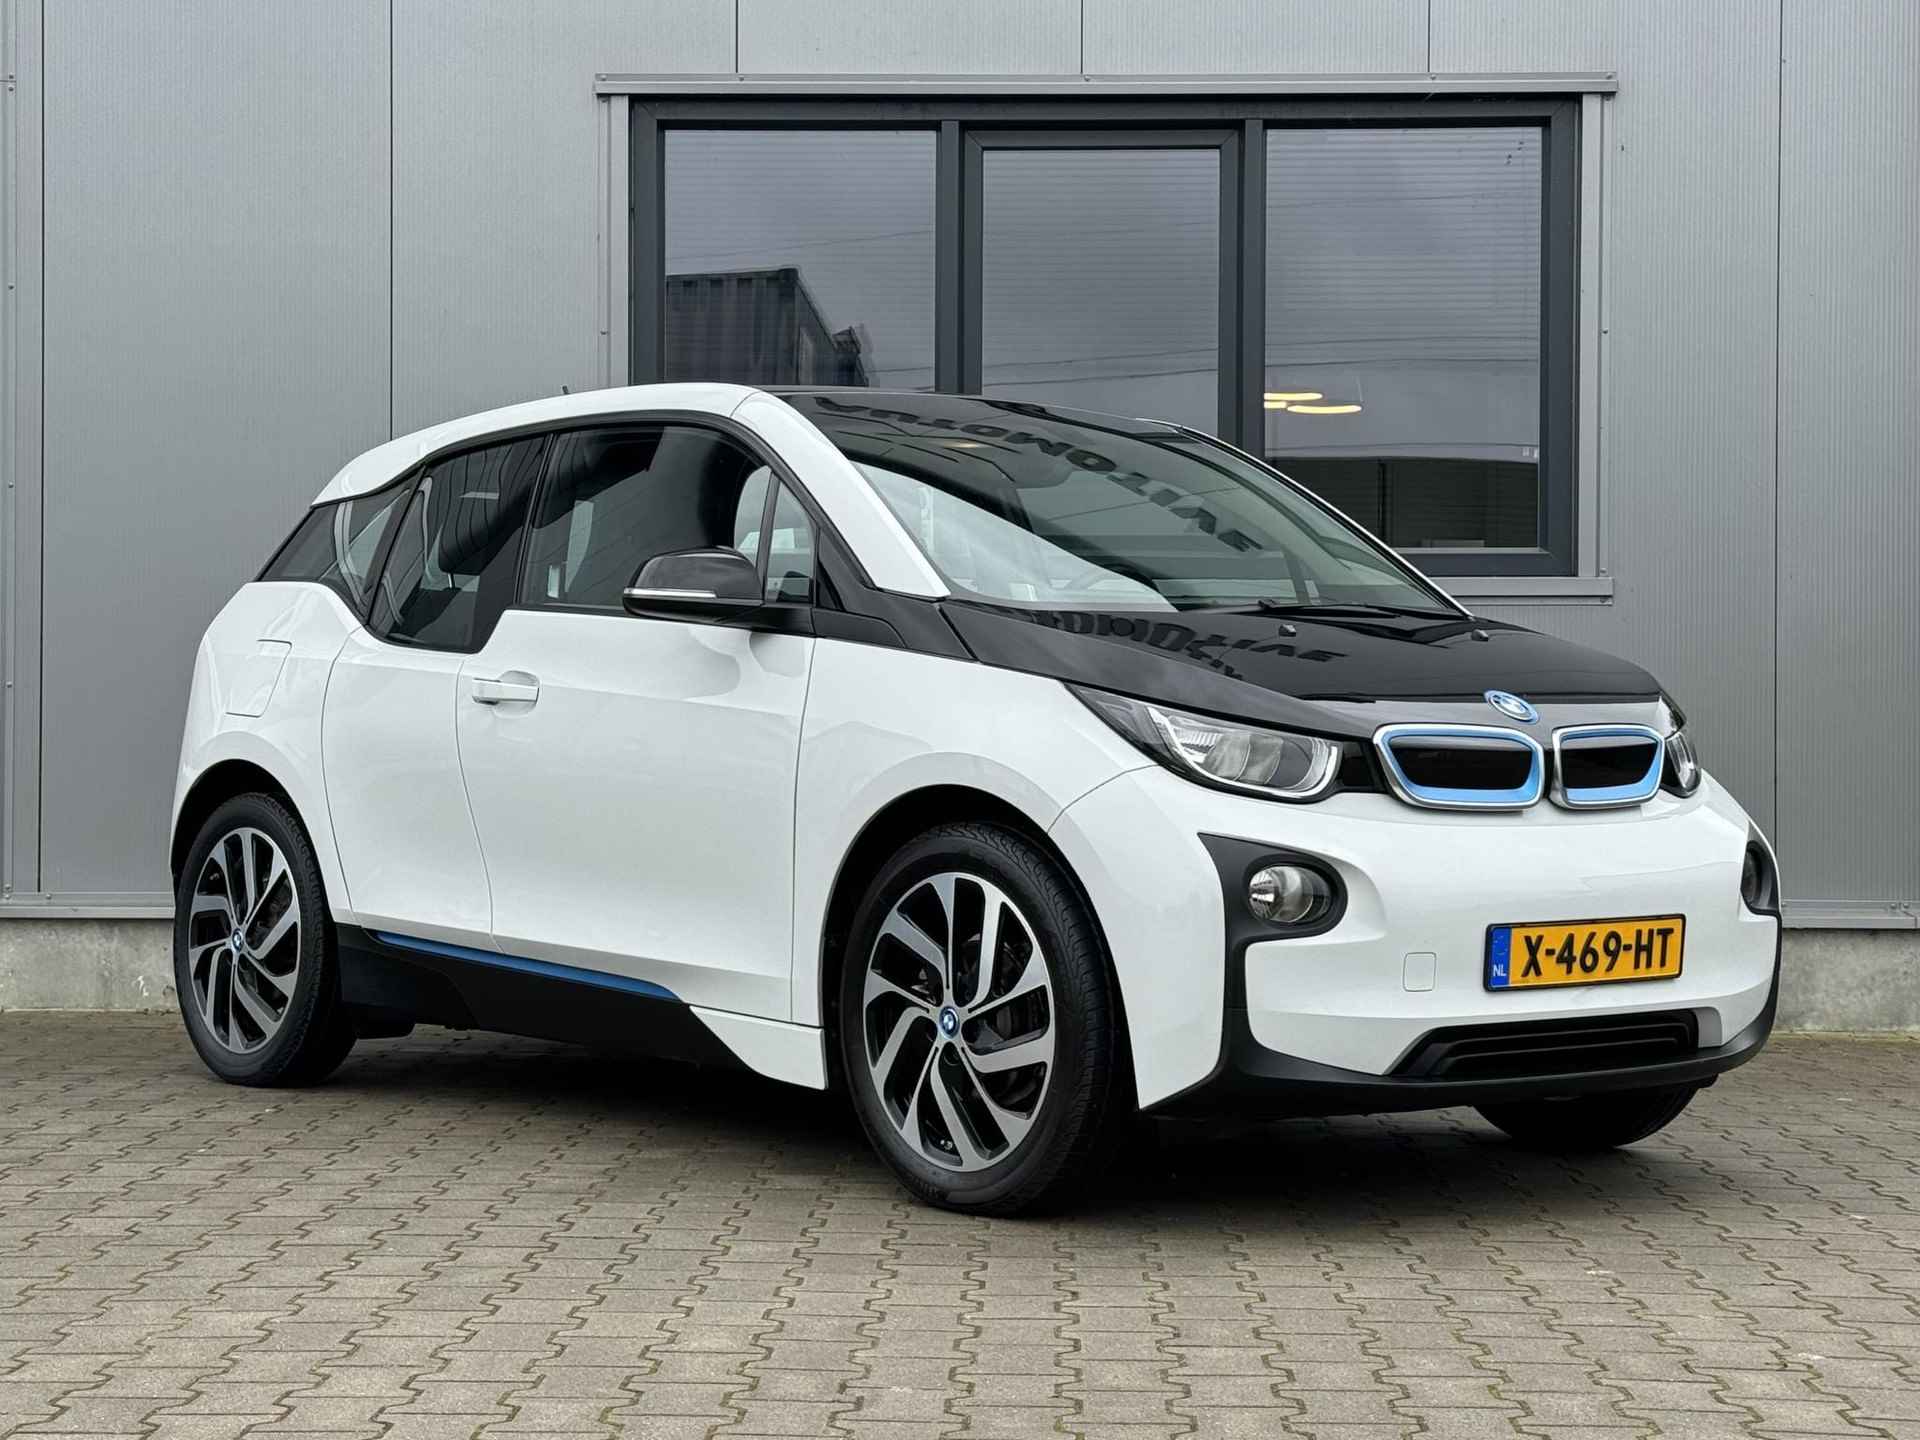 BMW i3 Comfort 22 kWh €12450,- na subsidie - 170 pk - Groot Navi - goed onderhouden - 2/30